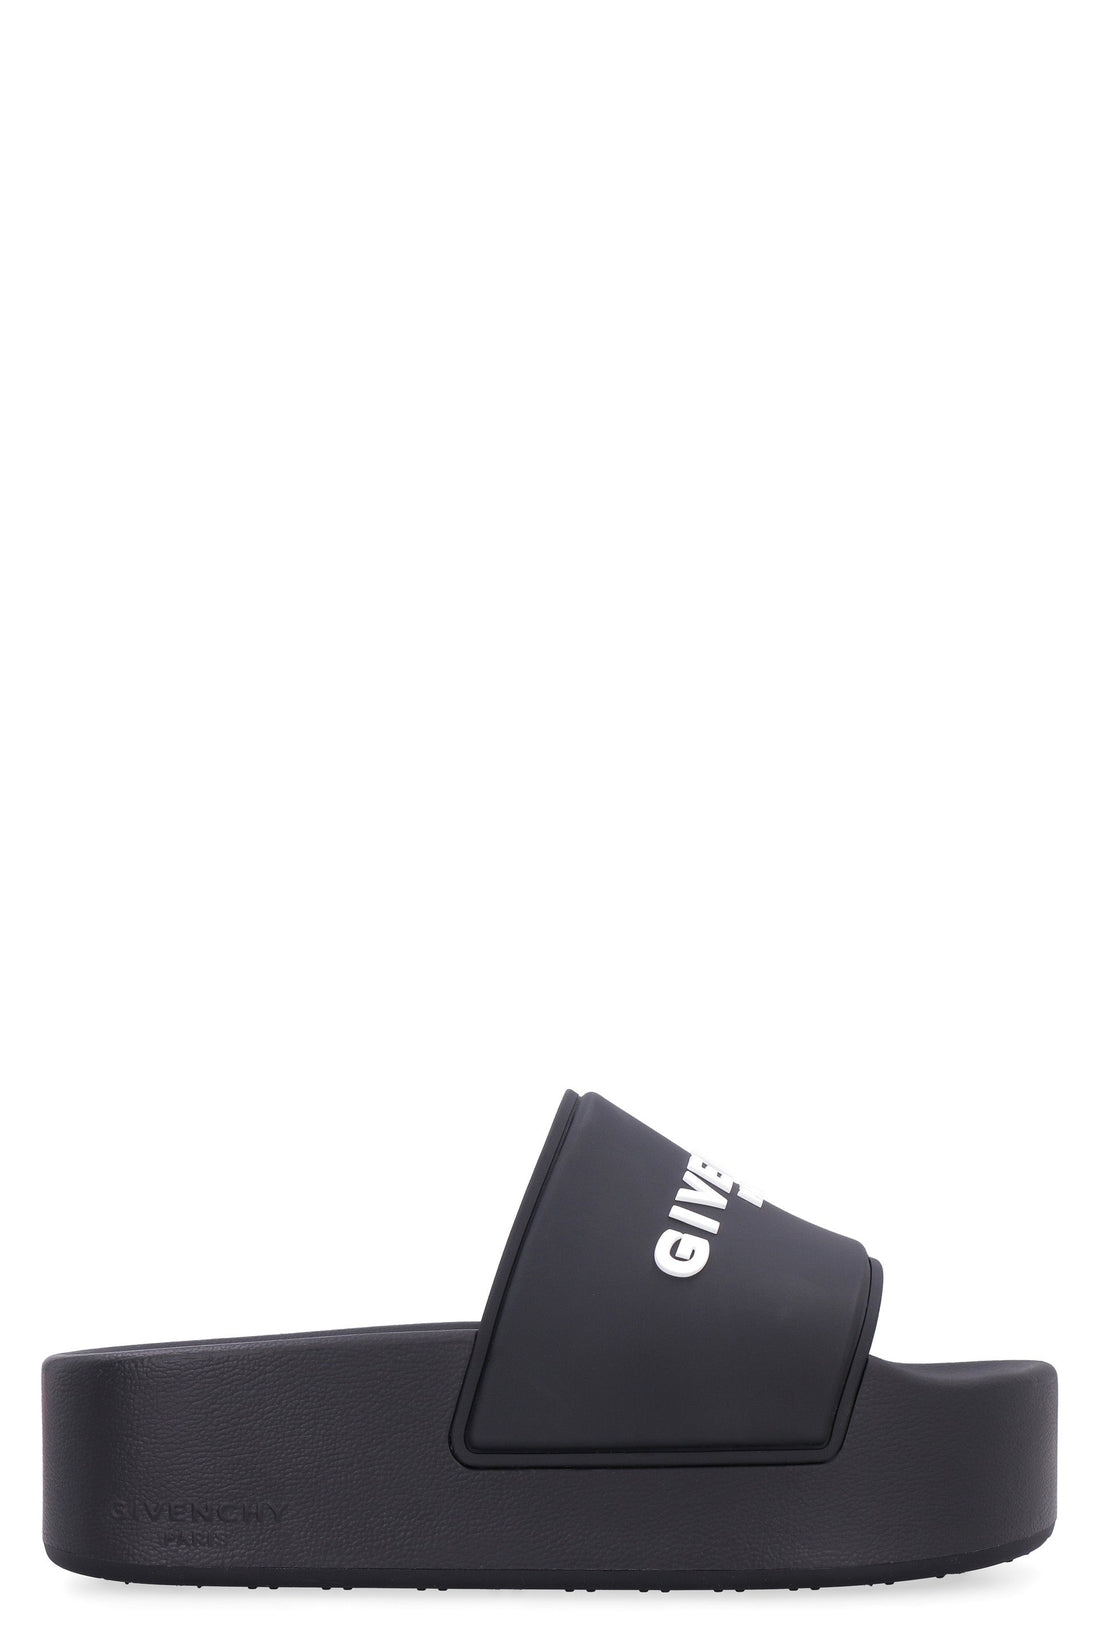 Givenchy-OUTLET-SALE-Logoed rubber platform slides-ARCHIVIST